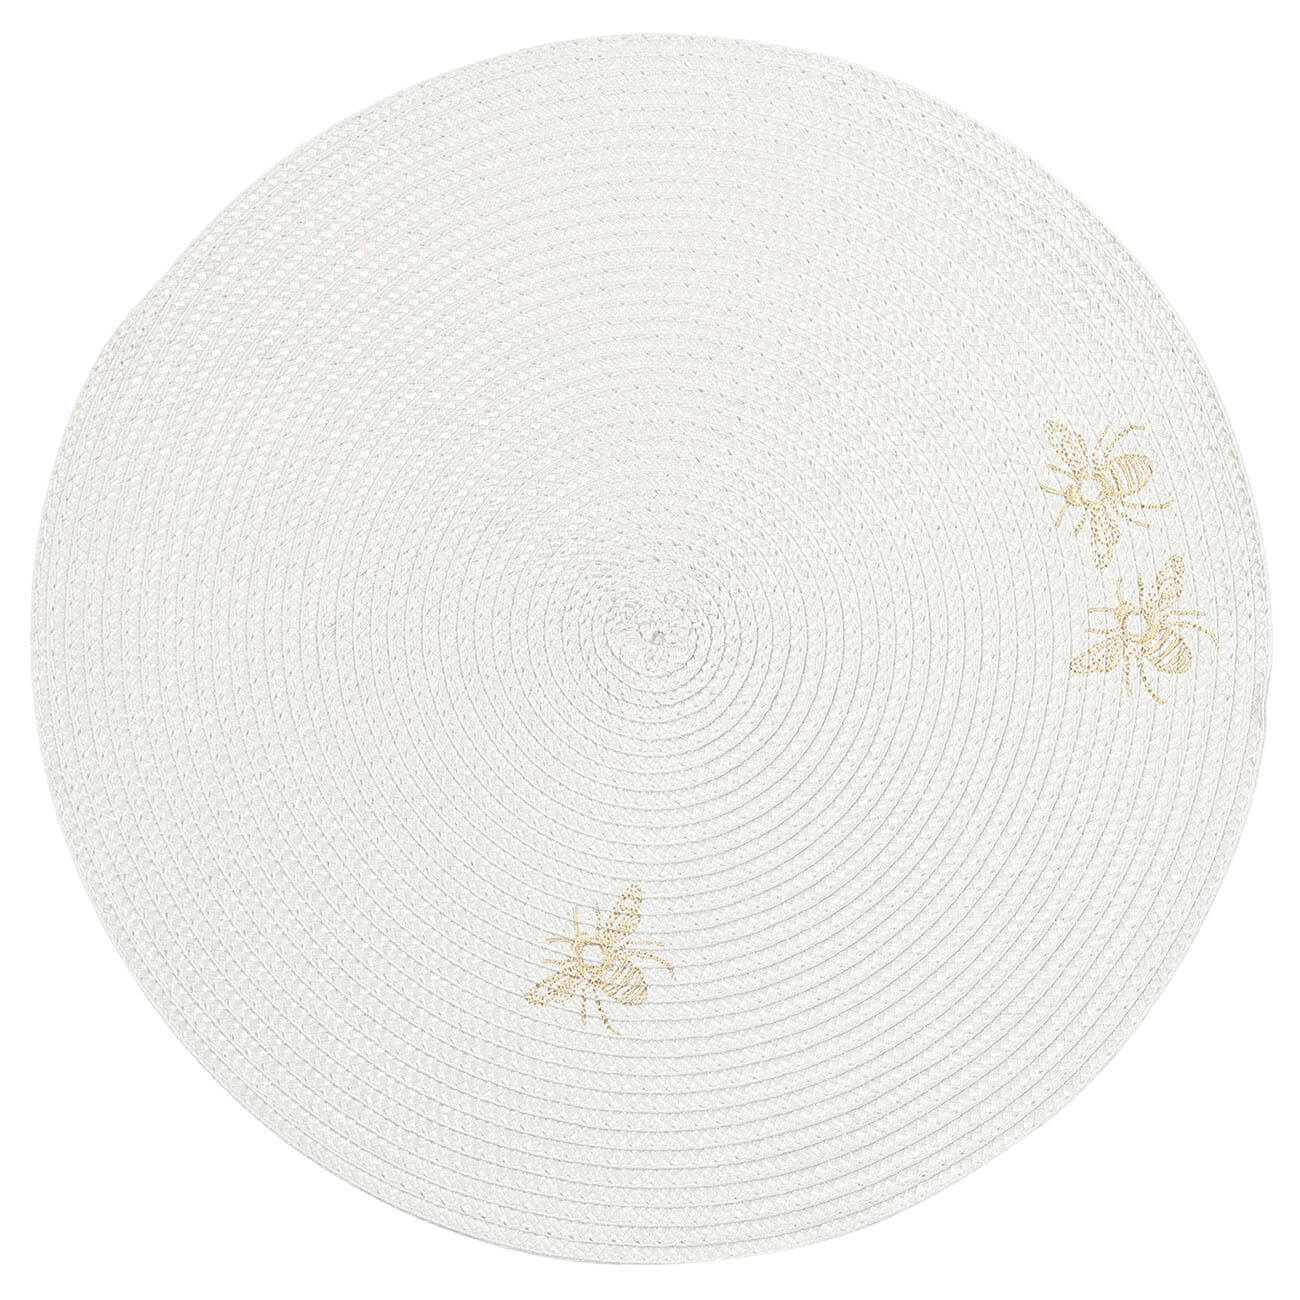 Салфетка под приборы, 38 см, полипропилен/ПЭТ, круглая, светло-серая, Пчелы, Circle embroidery фланелевая салфетка главдор